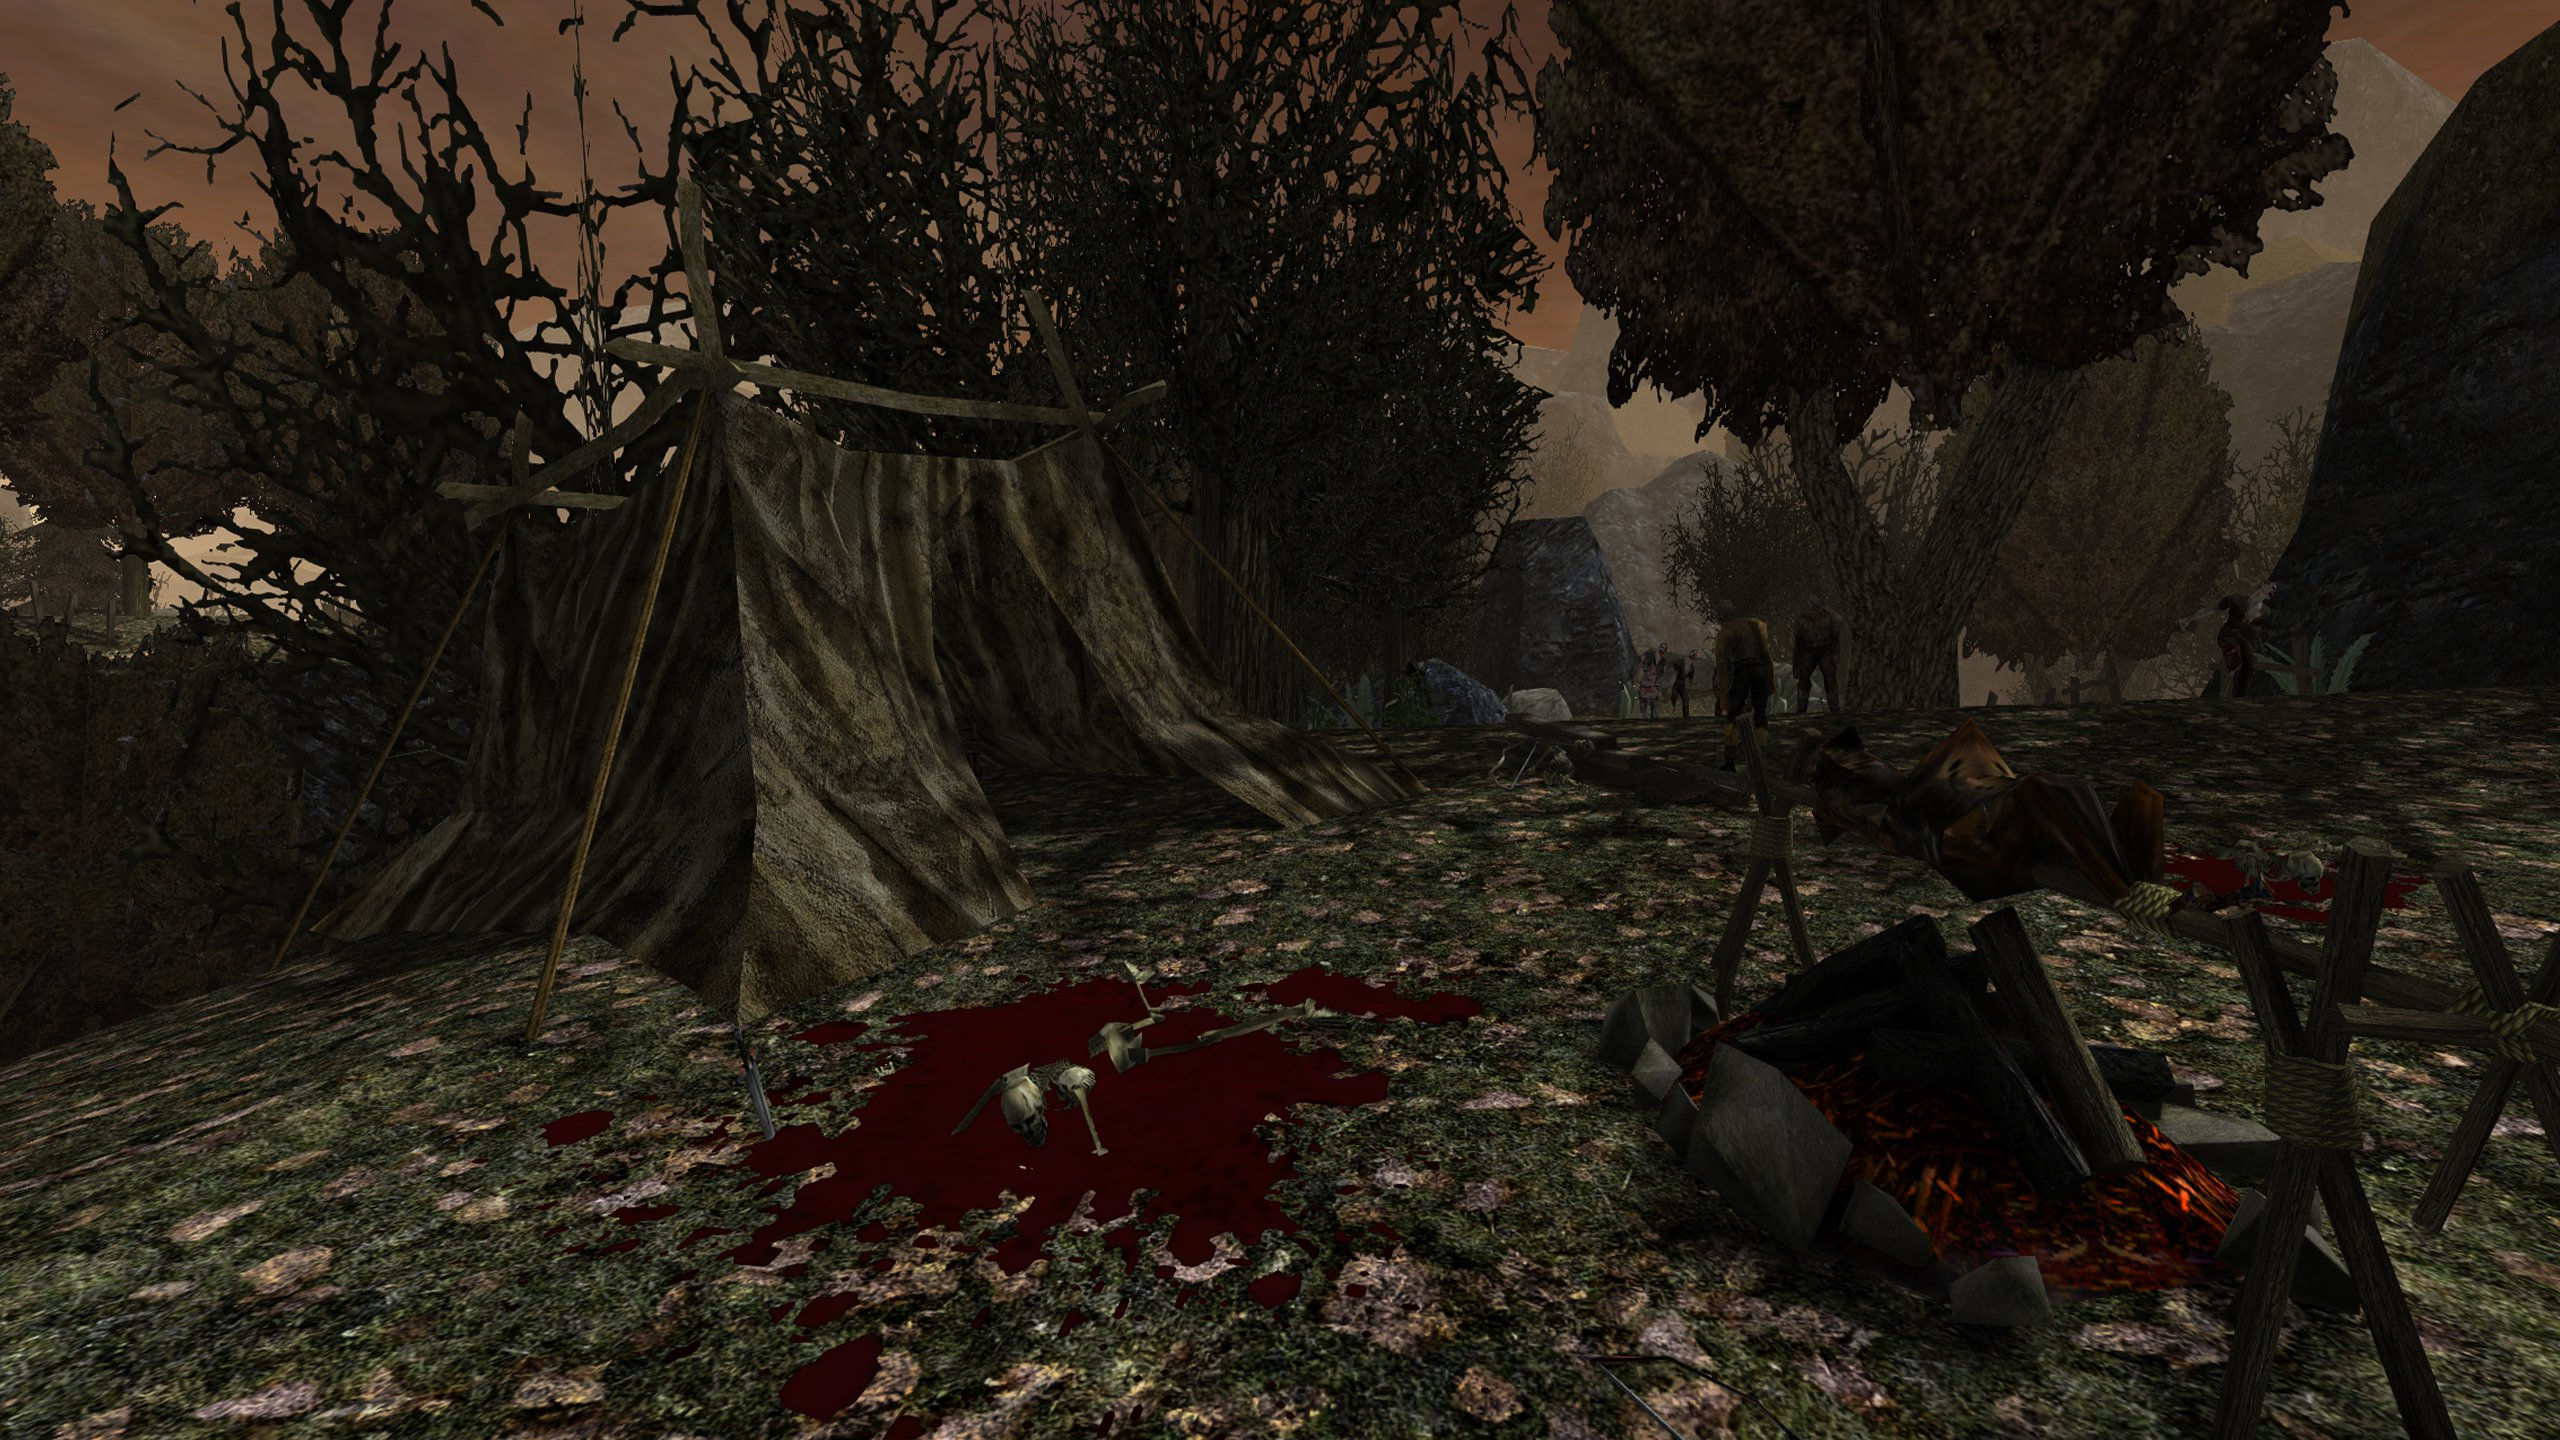 Screenshot aus der Gothic 1 Mod Dolina Zombie. Zu sehen ist ein Teil des Minentals, welches von Zombies überrannt wurde. Ein verlassenes Zelt ist um Vordergrund zu sehen, während im Hintergrund zahlreiche Zombies zu sehen sind. 